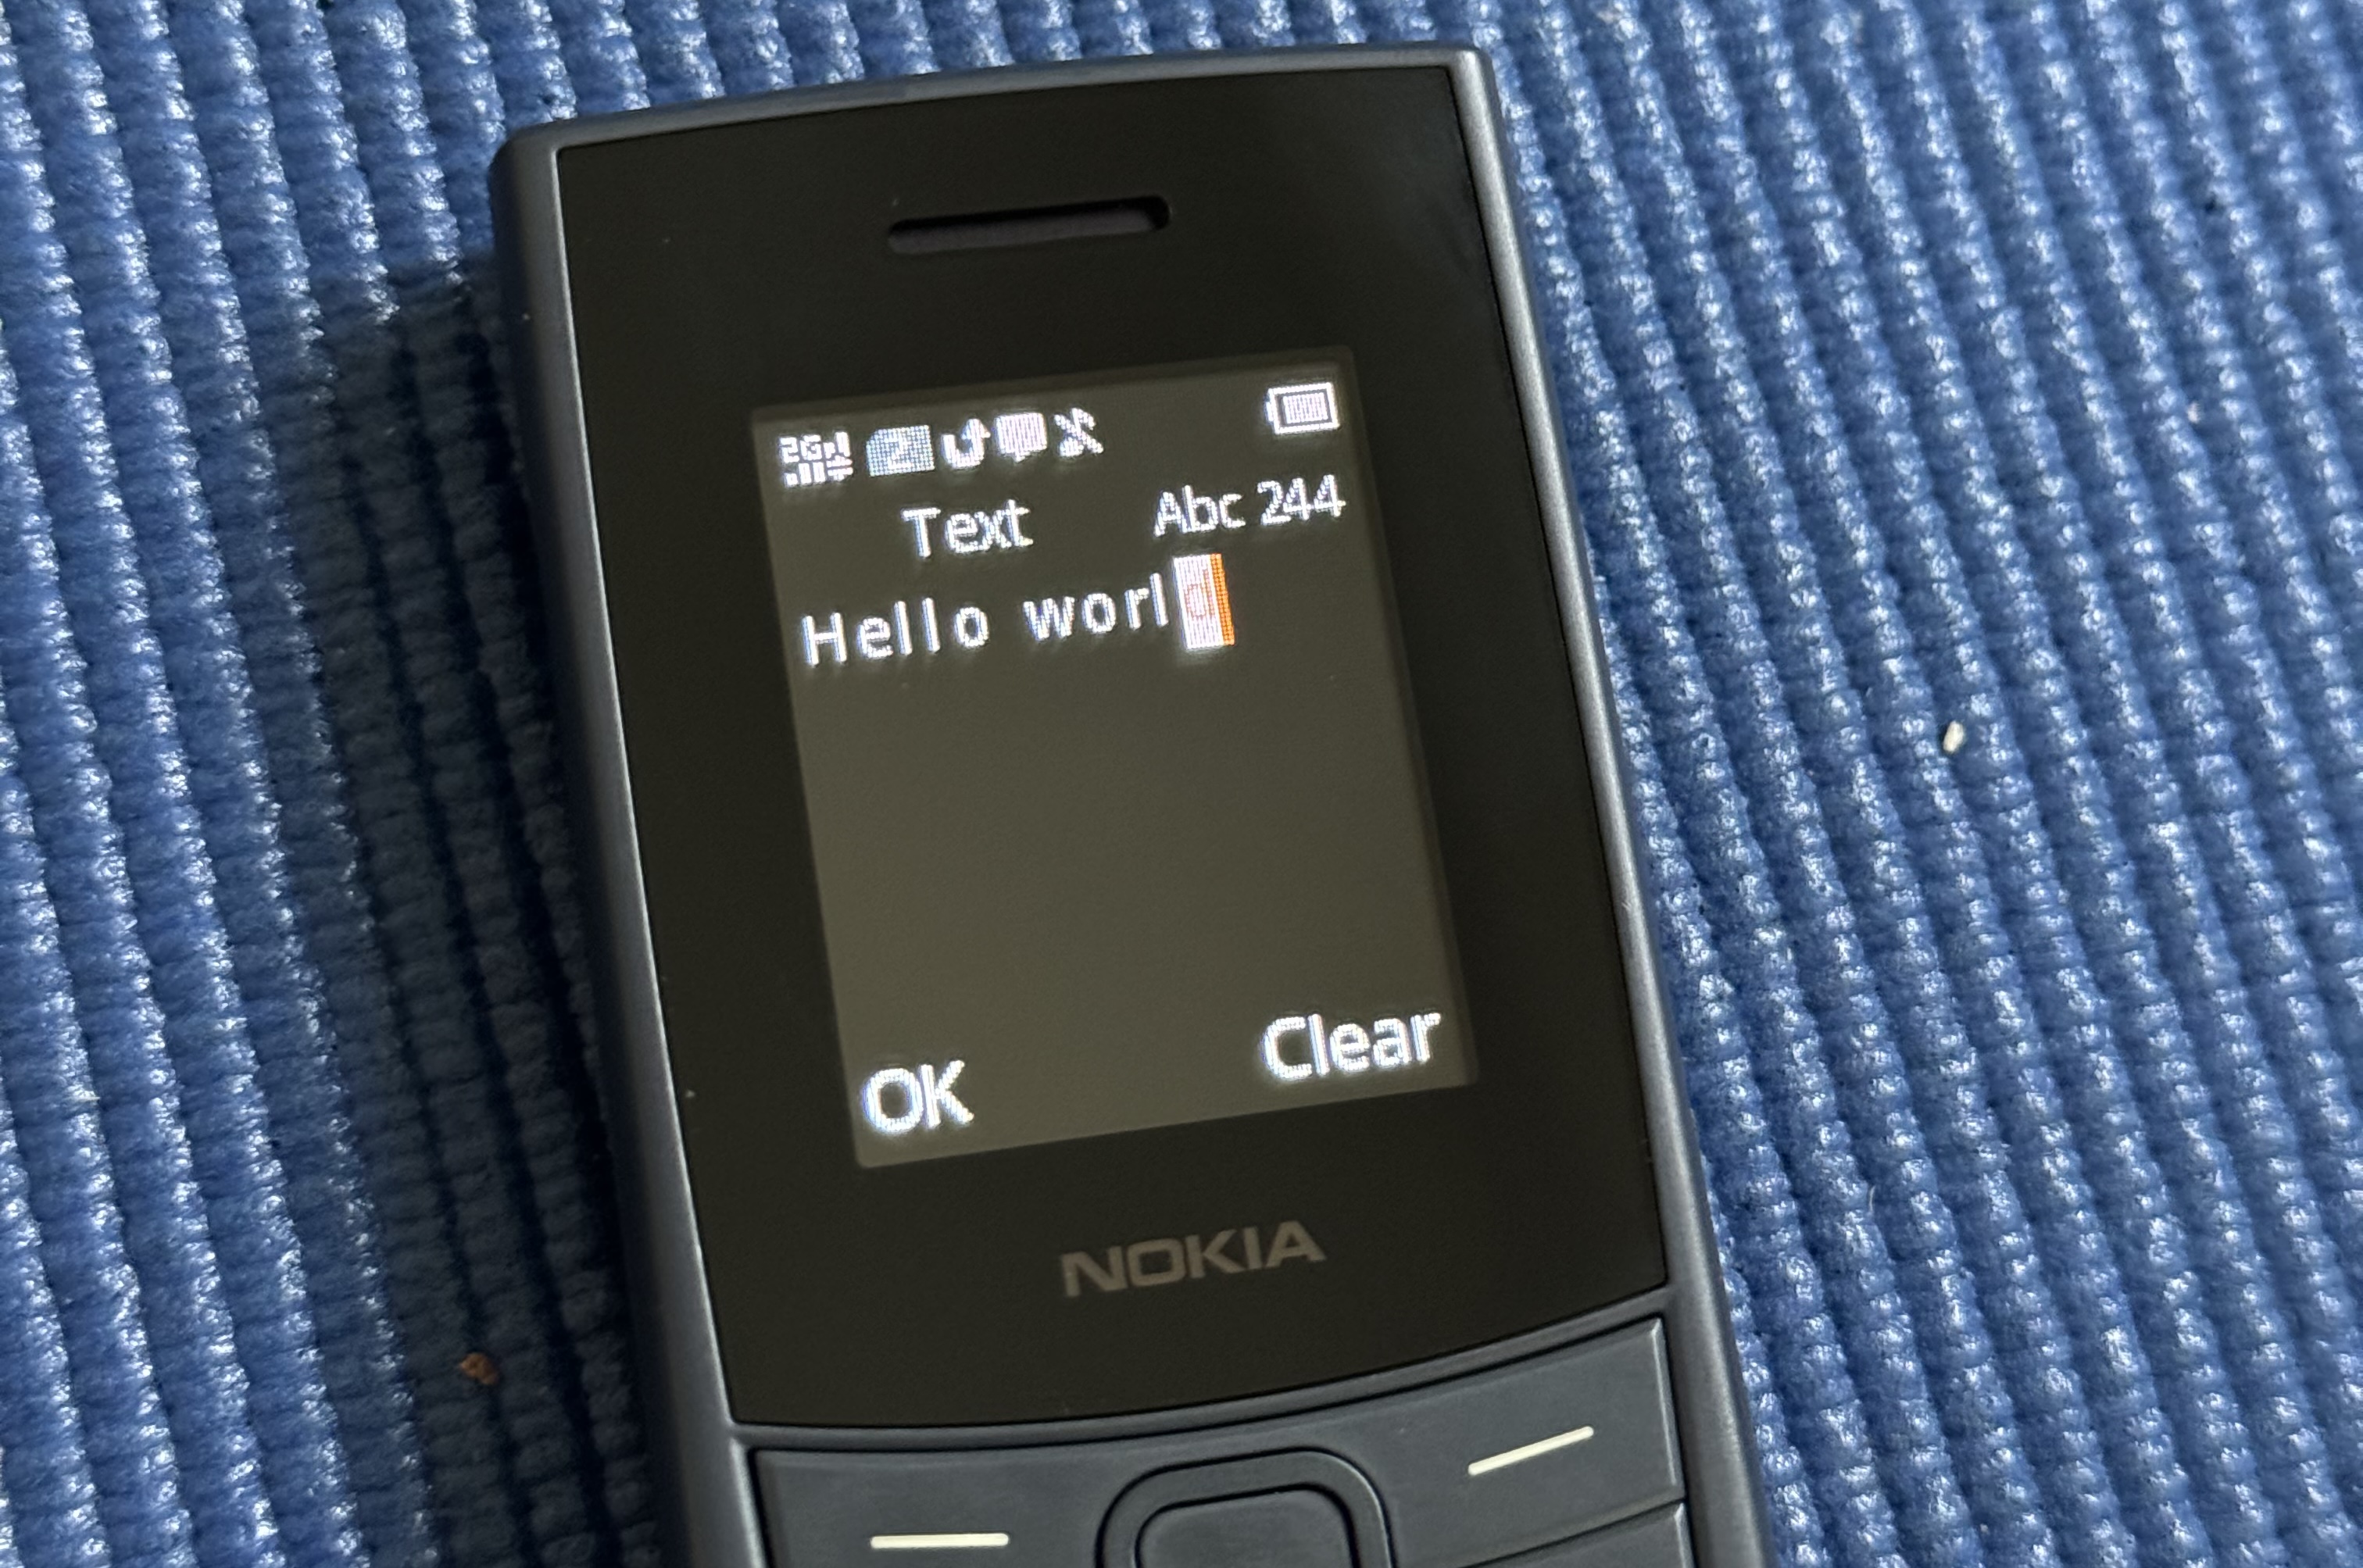 Nokia 110 4G Text Input